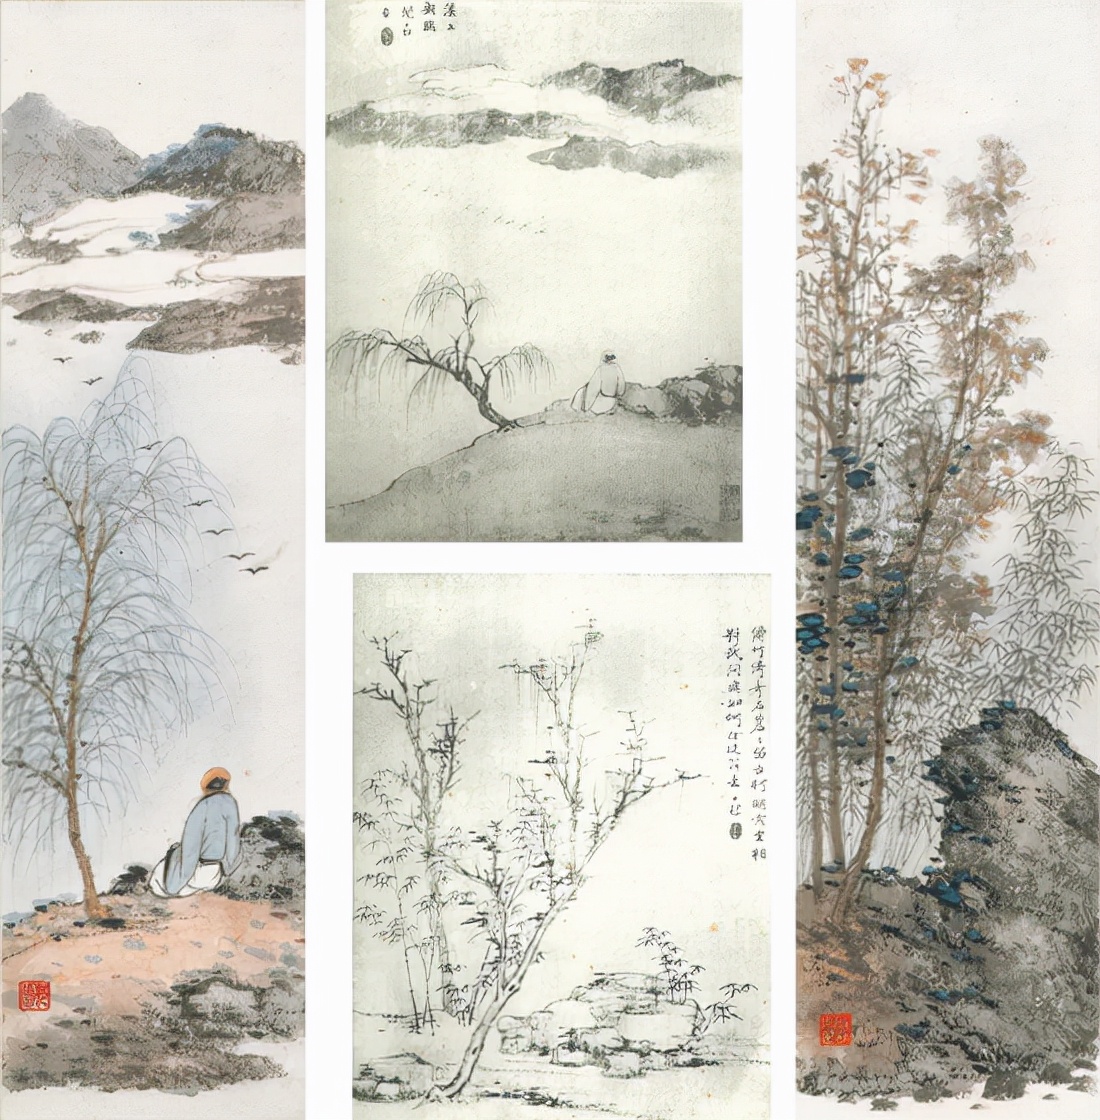 誠軒21秋拍中國書畫丨啟功的藝術世界